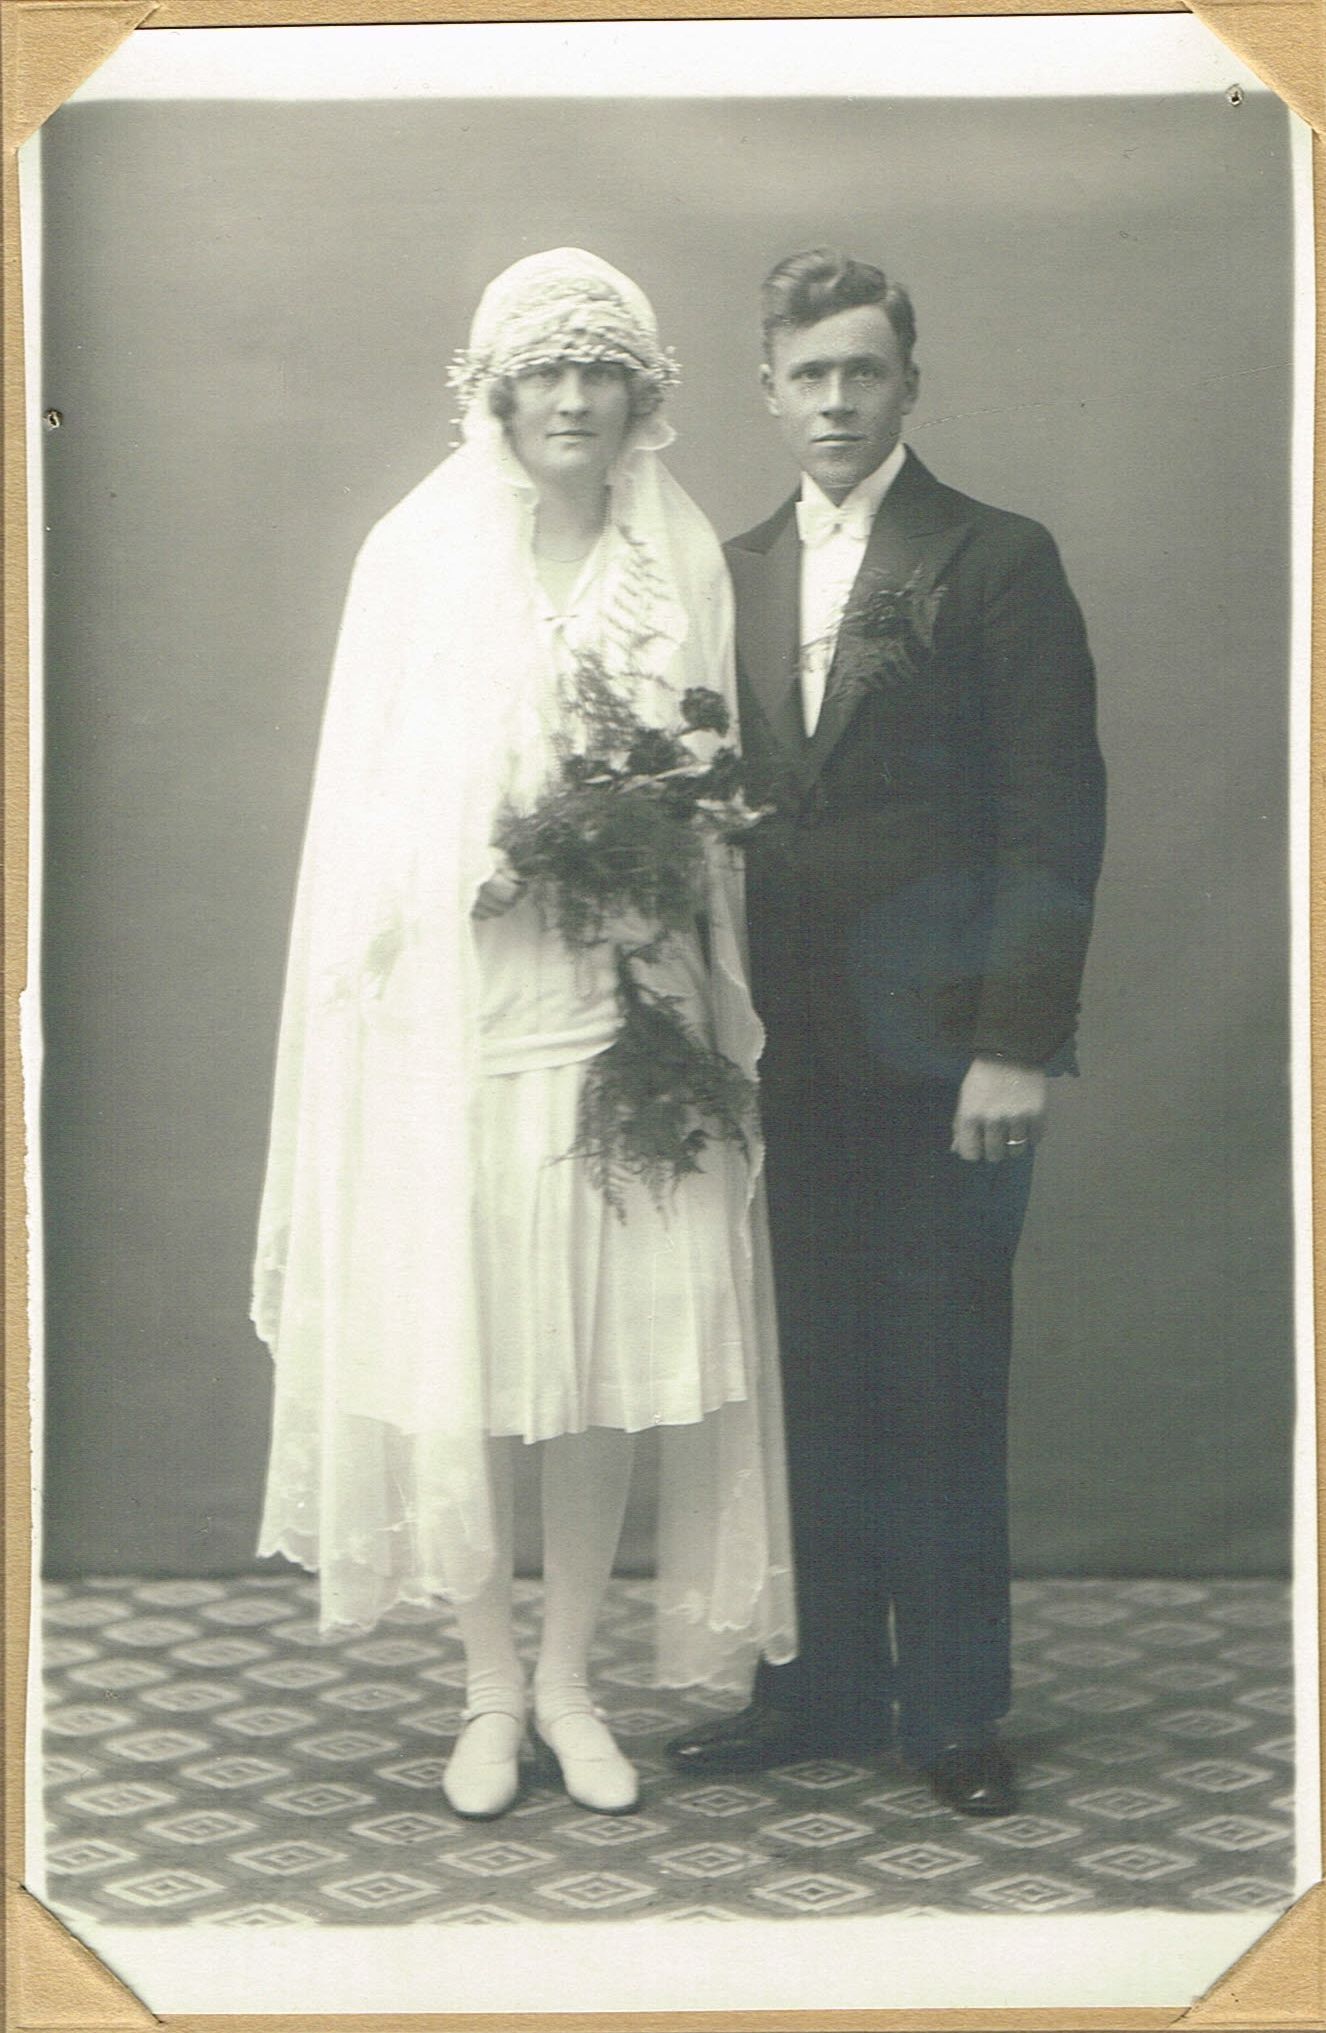 Seth och Vilma Burman bröllopsfoto